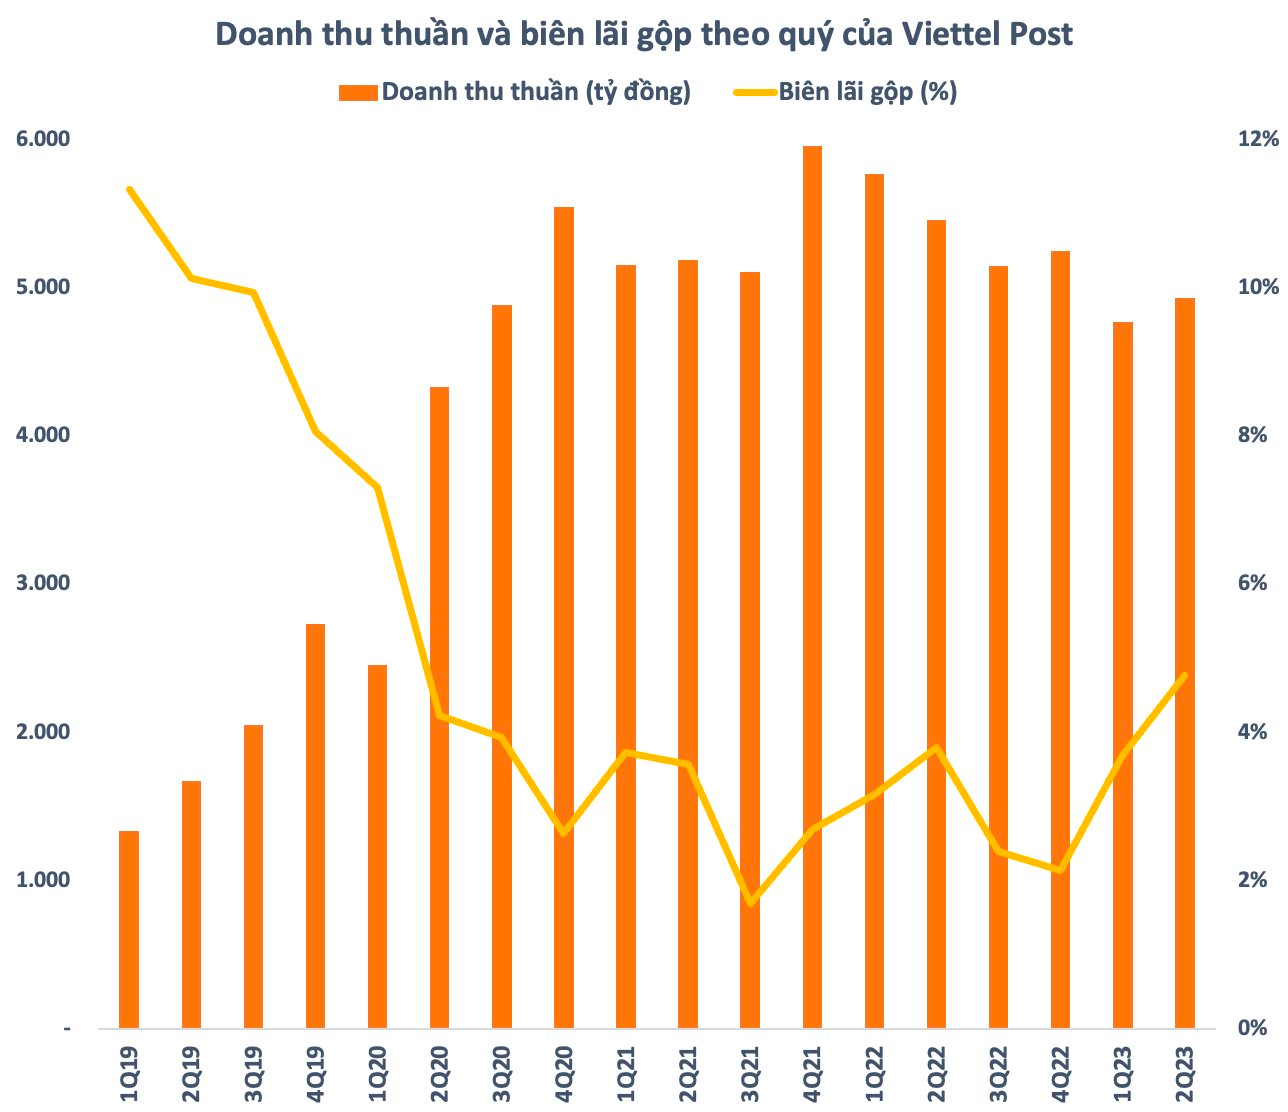 Cạnh tranh về giá dịch vụ chuyển phát ngày càng gay gắt, Viettel Post (VTP) giảm tốc tăng thị phần, âm thầm cải thiện biên lợi nhuận - Ảnh 1.